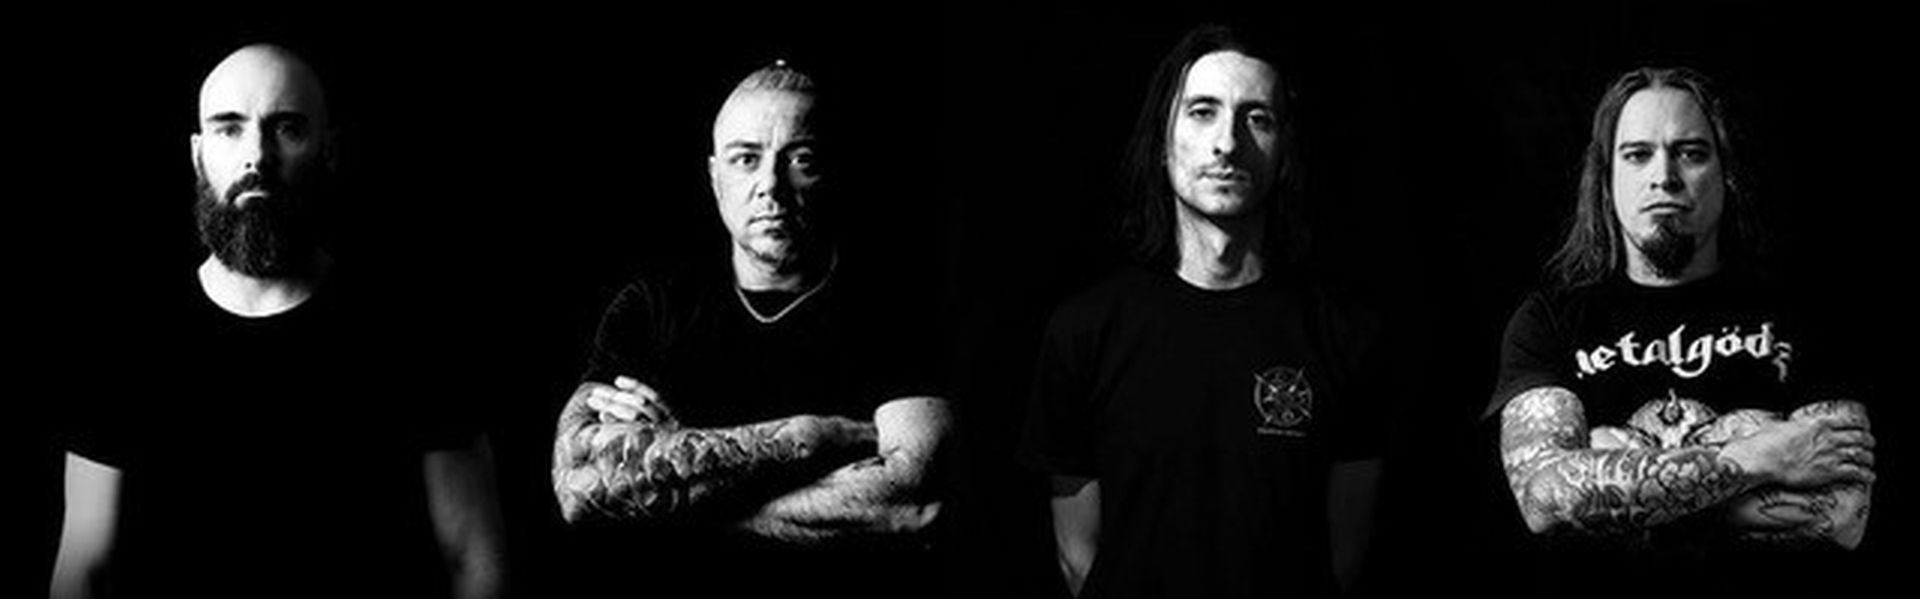 De Nederlandse death metal band Pestilence uit Enschede draait al heel wat jaren succesvol mee in de scene. Ze zijn opgericht in 1986 en na twee keer gestopt te zijn, zijn ze sinds 2016 weer helemaal alive en kicking! 